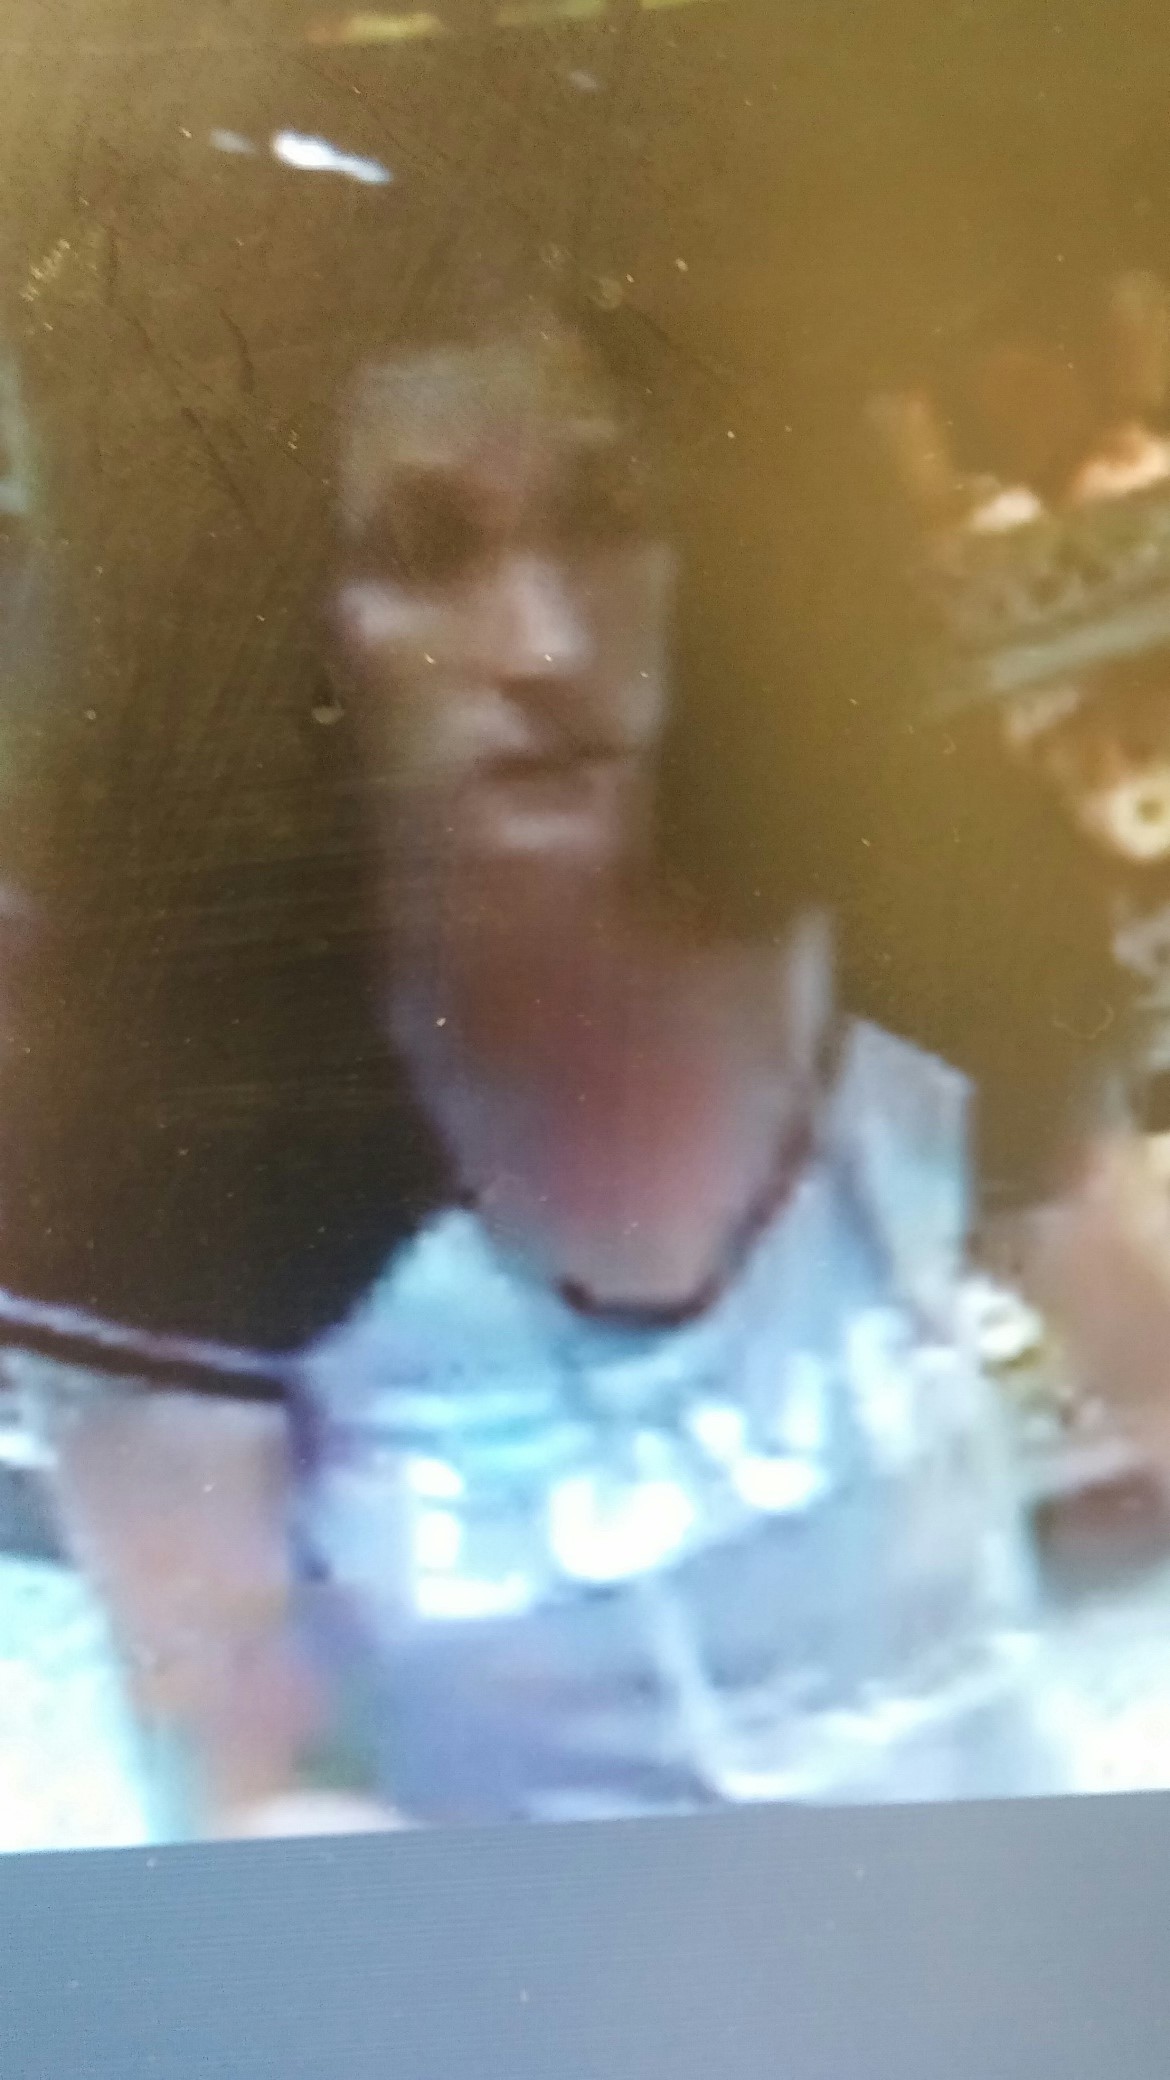 Deputy Asks for Help Identifying Shoplifter